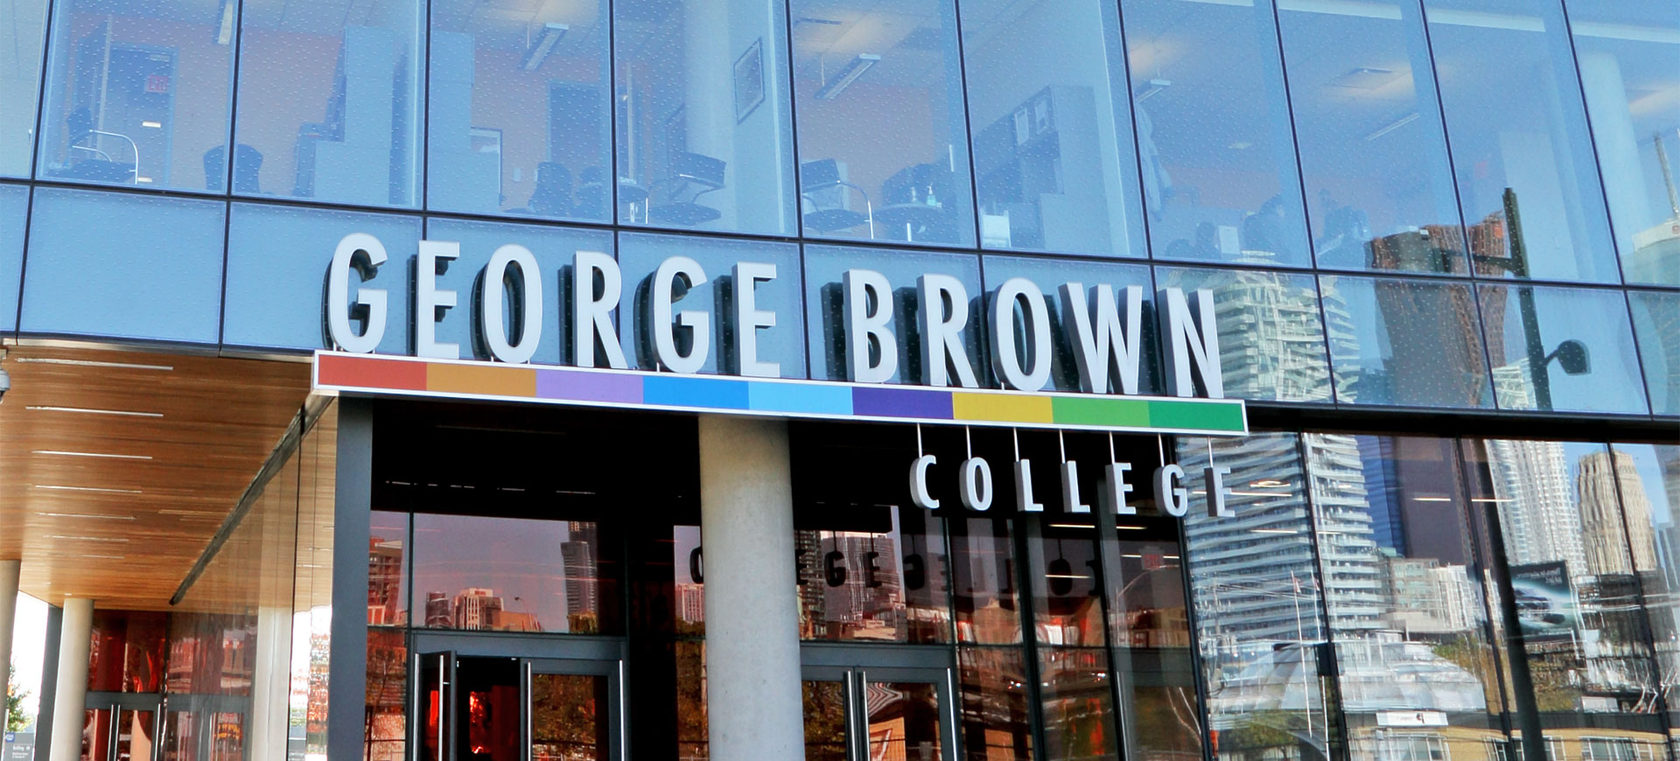 george brown college resume help